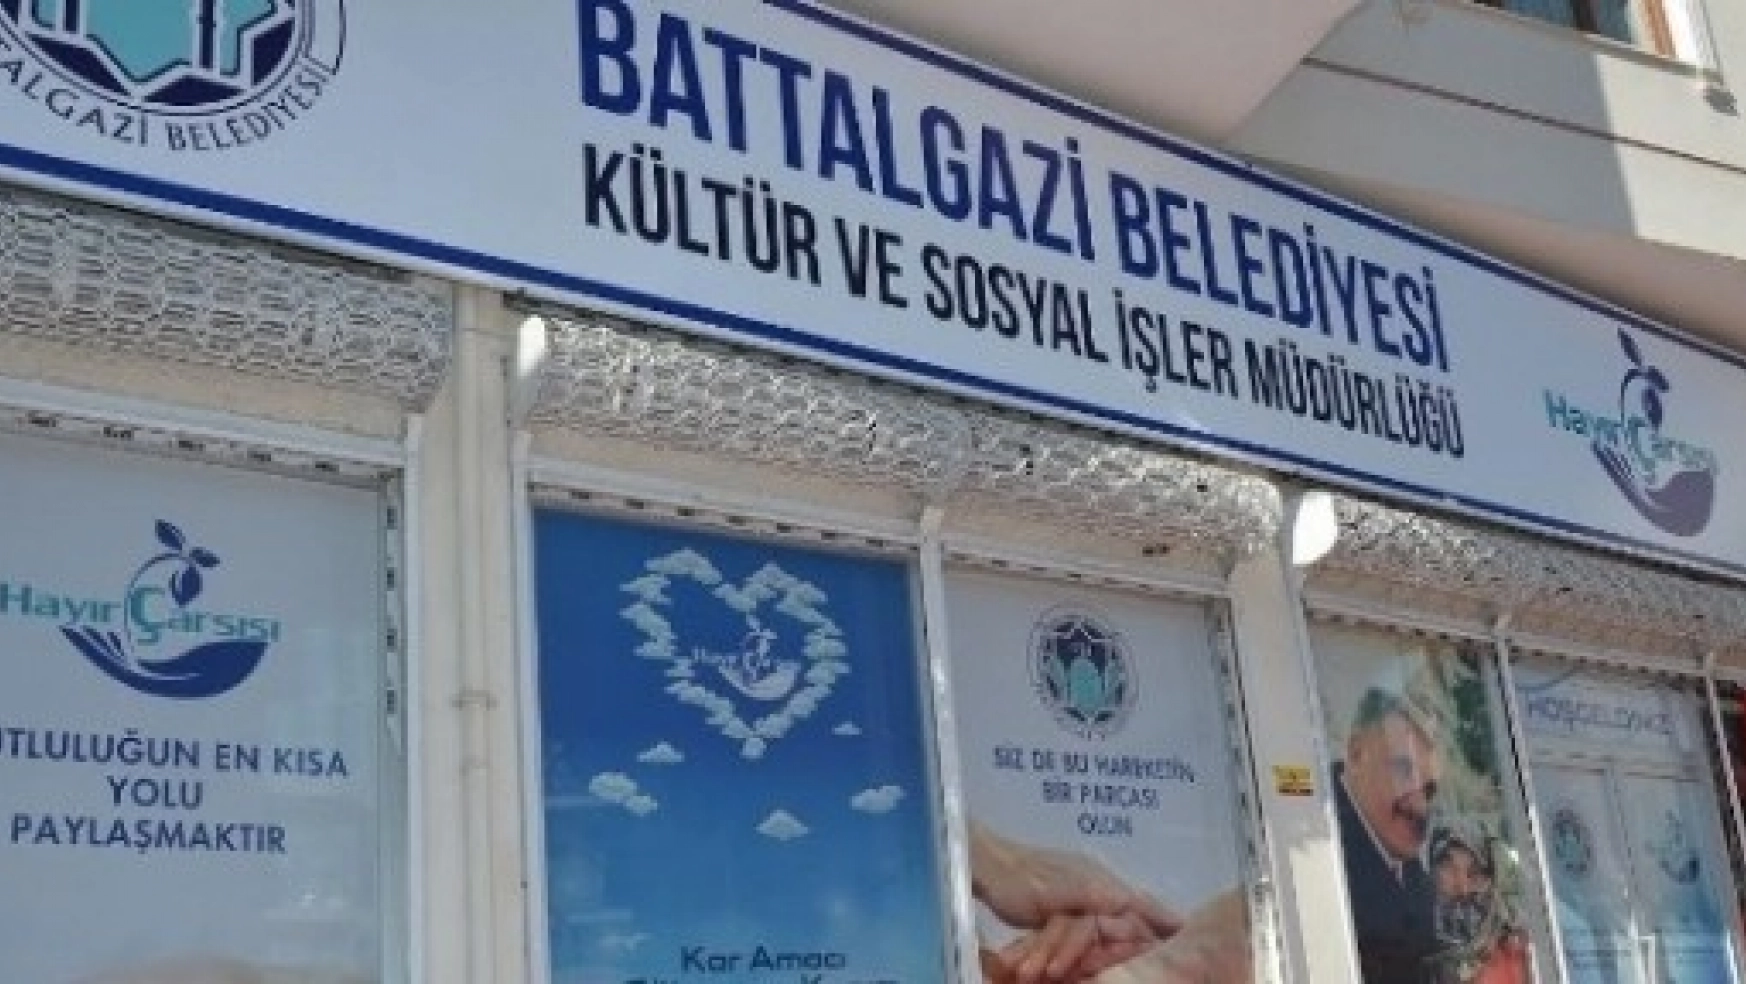 Battalgazi Belediyesi, Hayır Çarşısı'nı Hizmete Açıyor